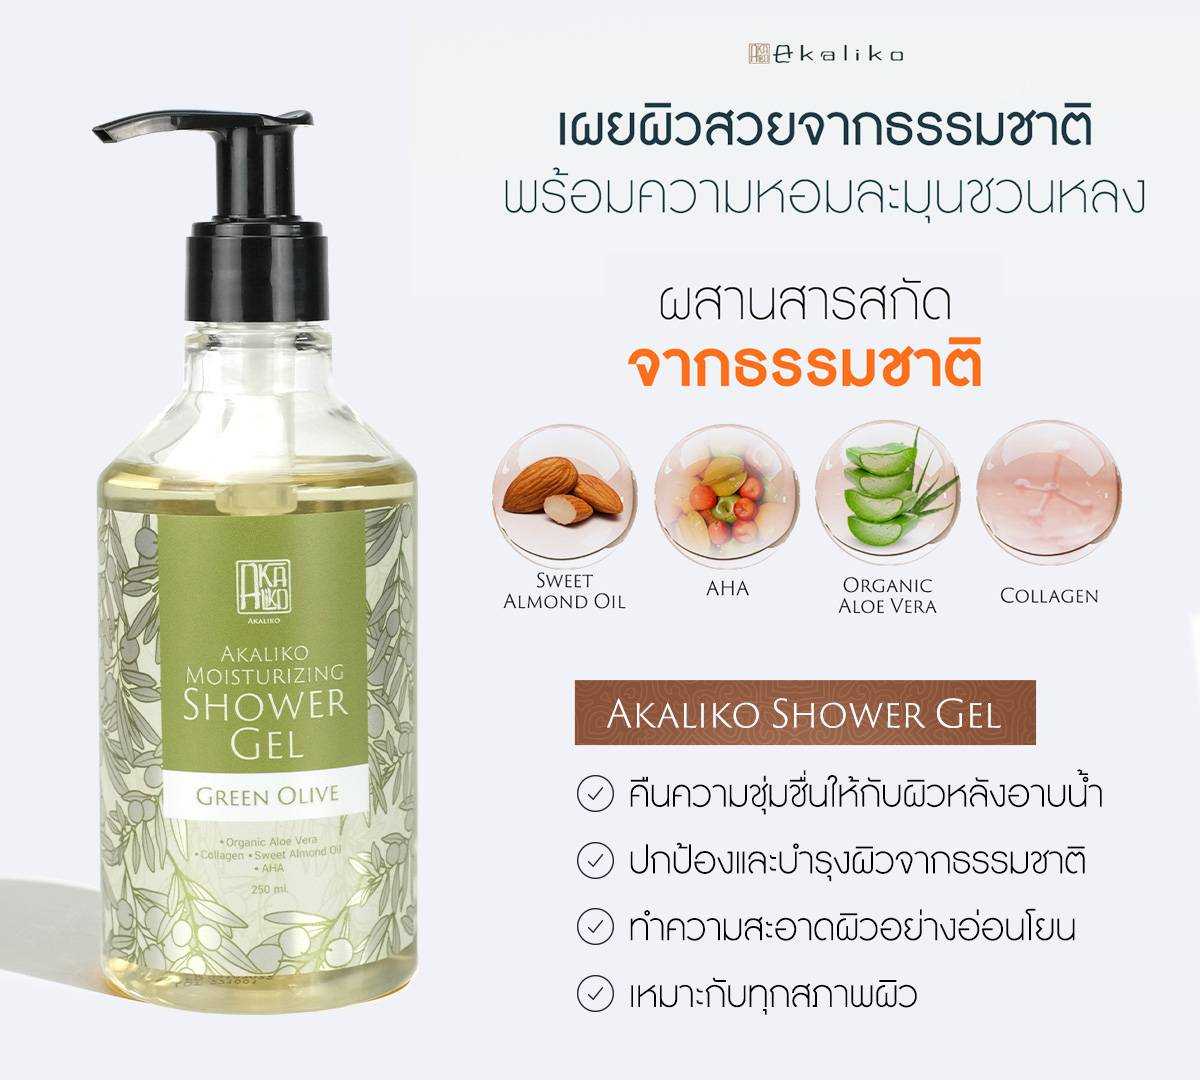 Akaliko Moisturizing Shower Gel